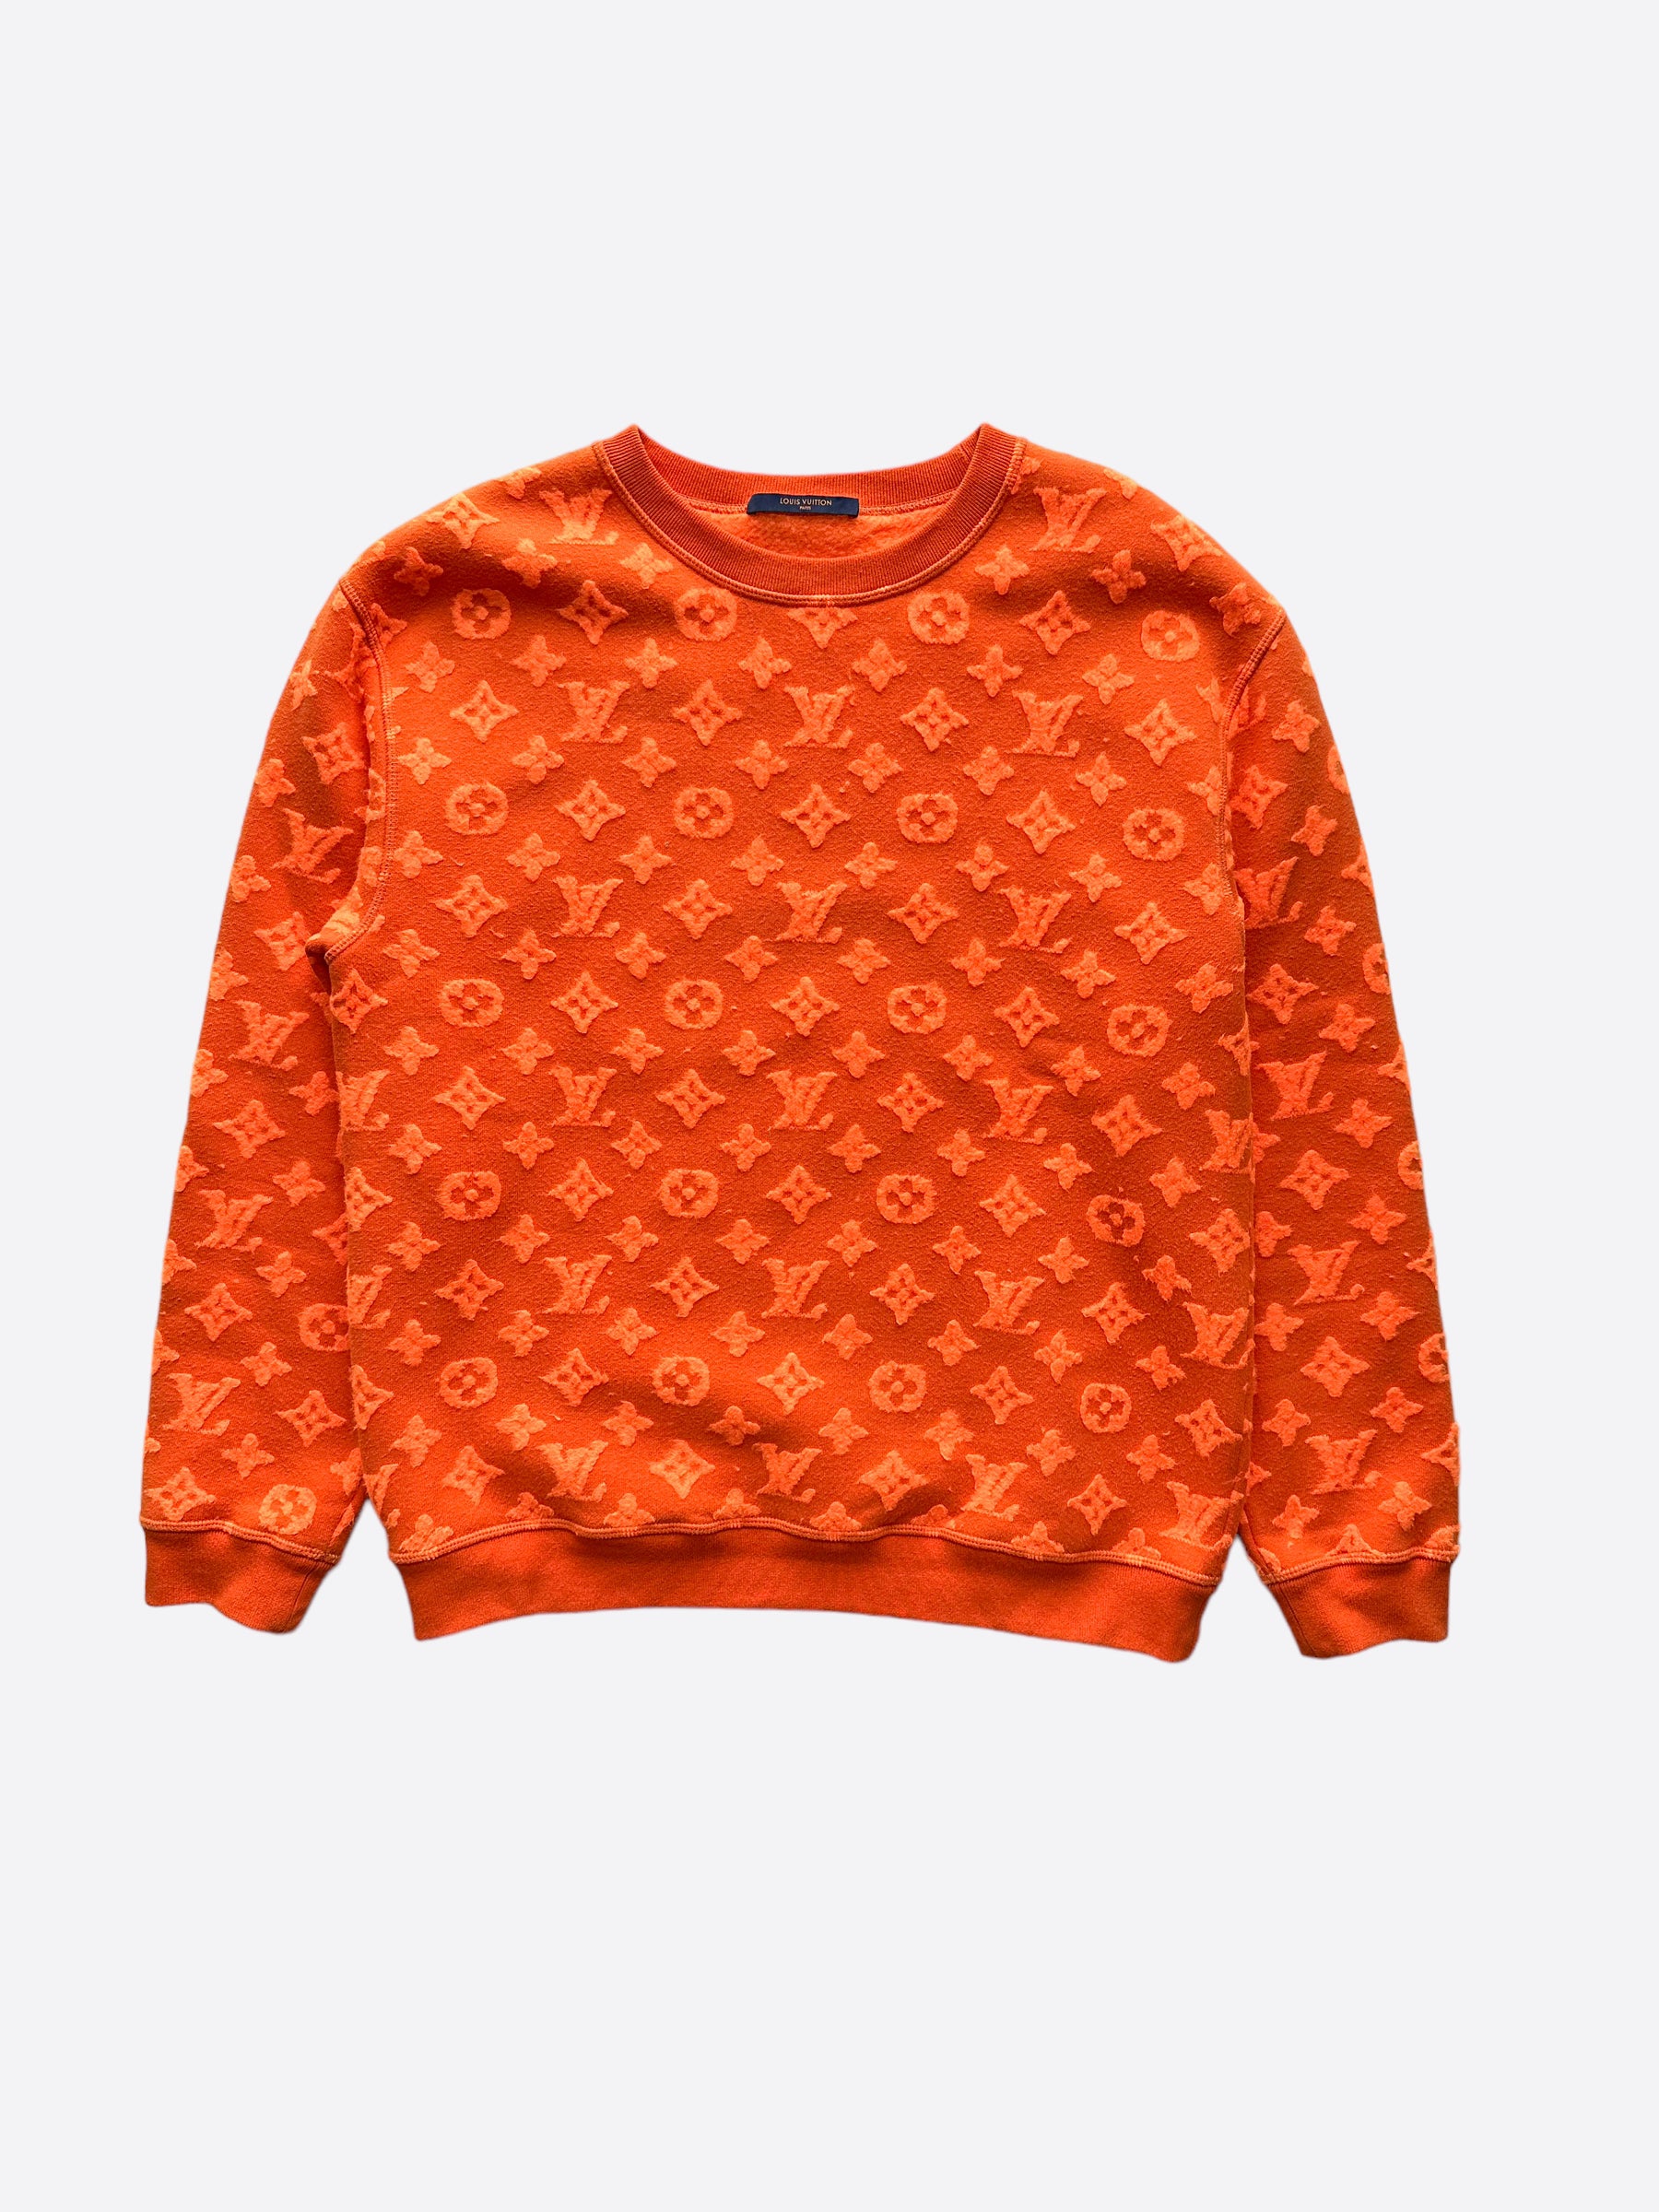 Sweatshirt Louis Vuitton Orange size S International in Cotton - 23999749